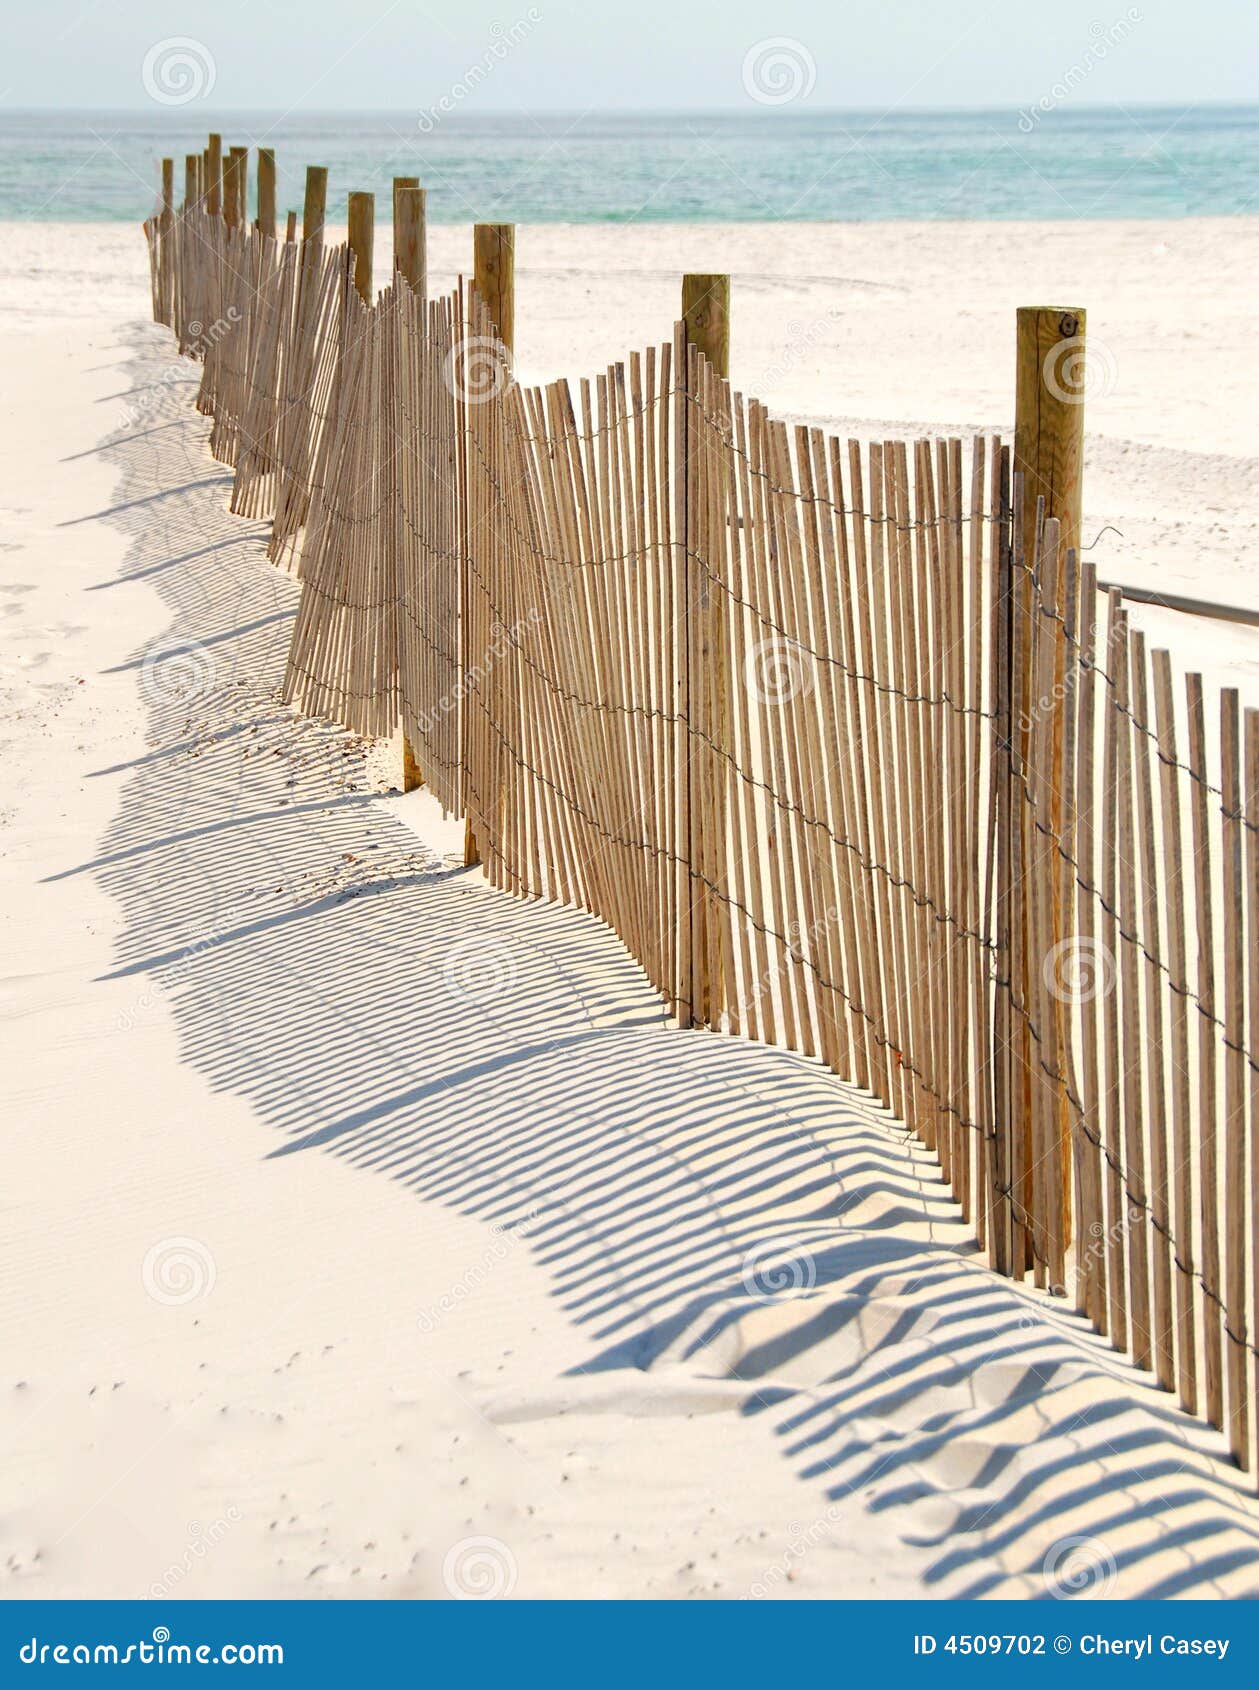 dune fence on beach